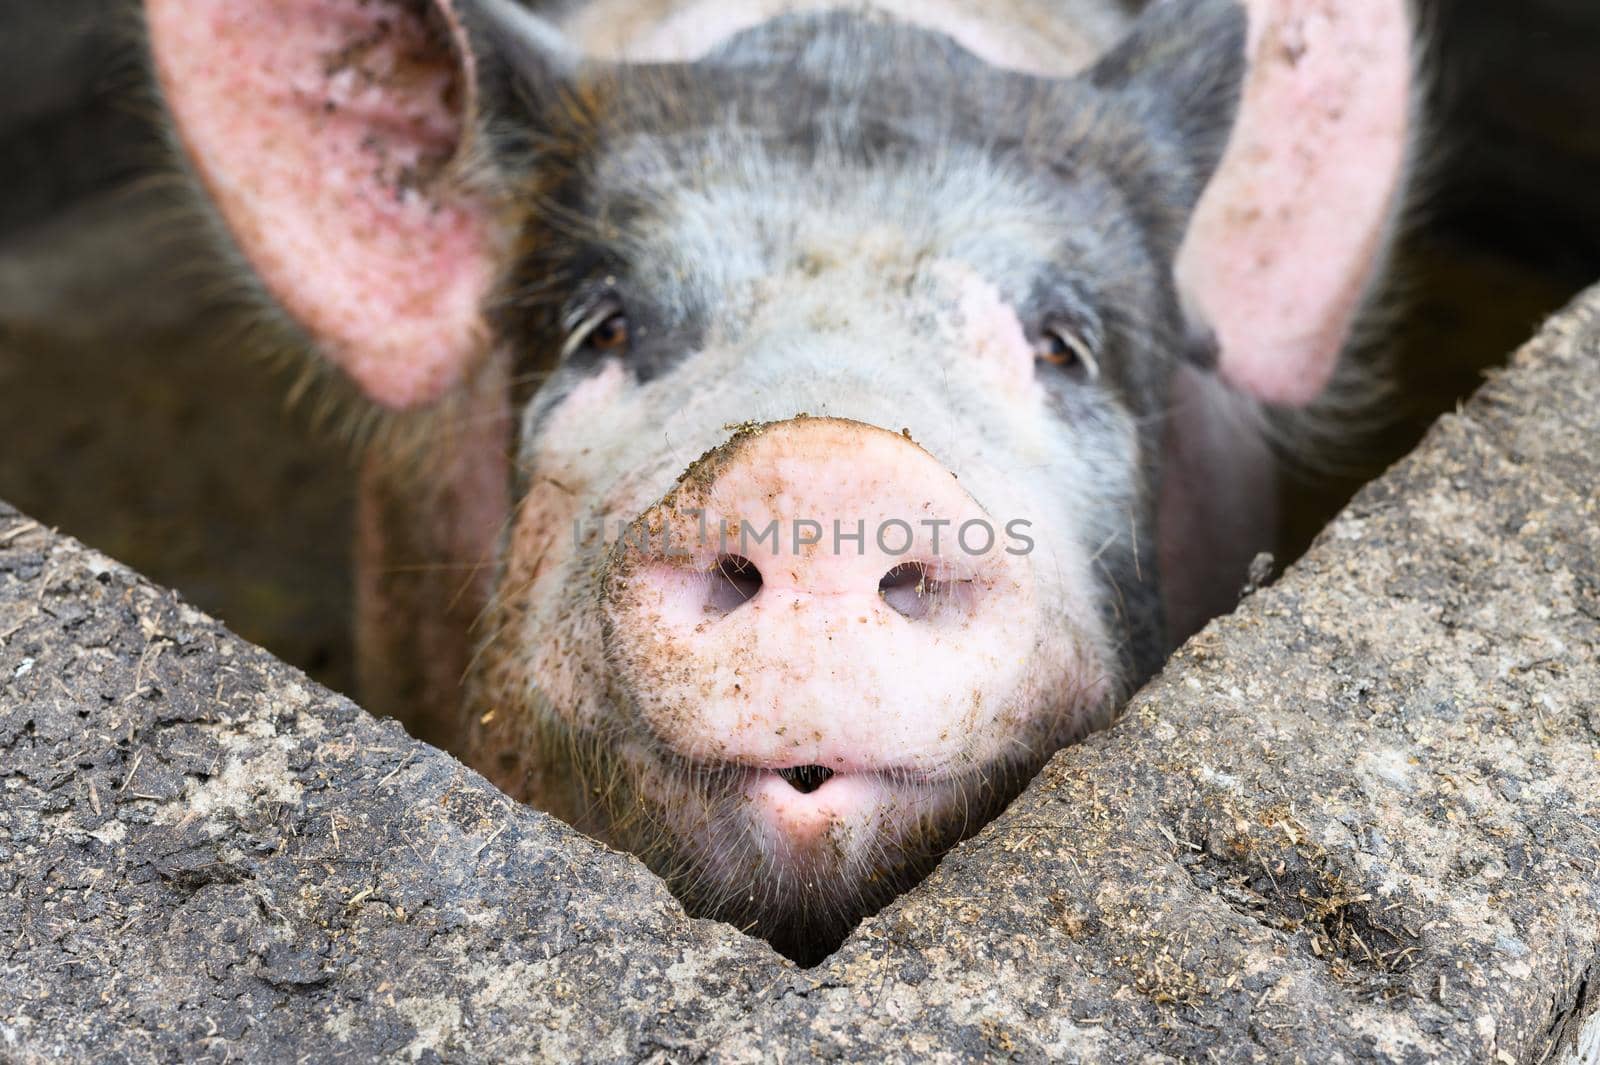 Big pig on a farm in a pigsty